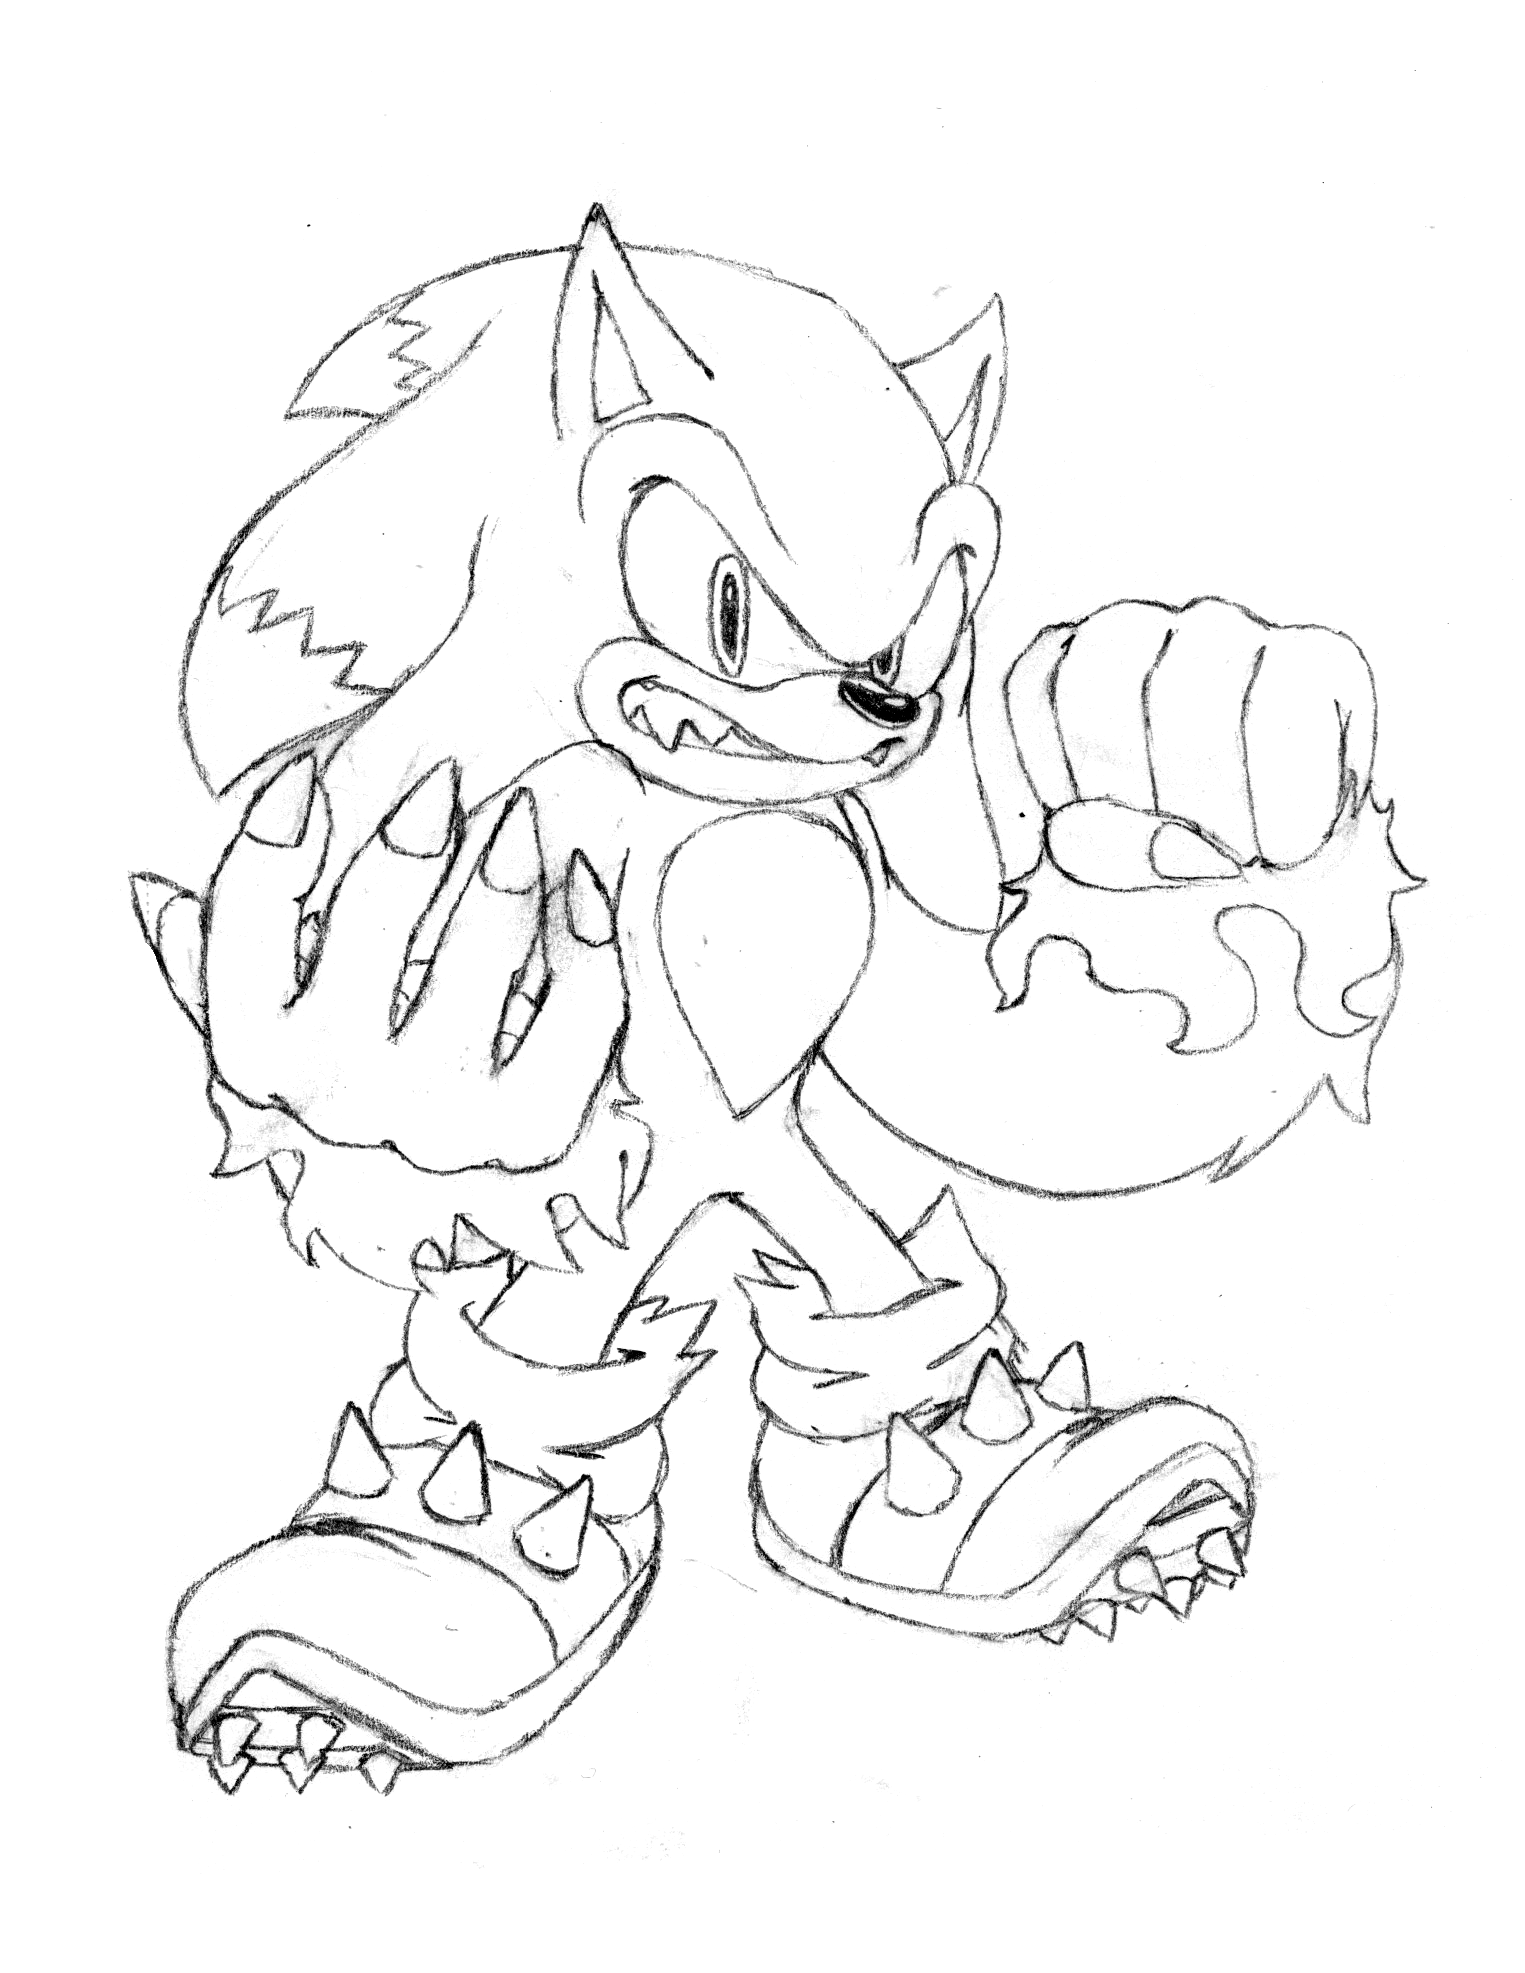 Sonic the werehog sketch by rainbowyosh on